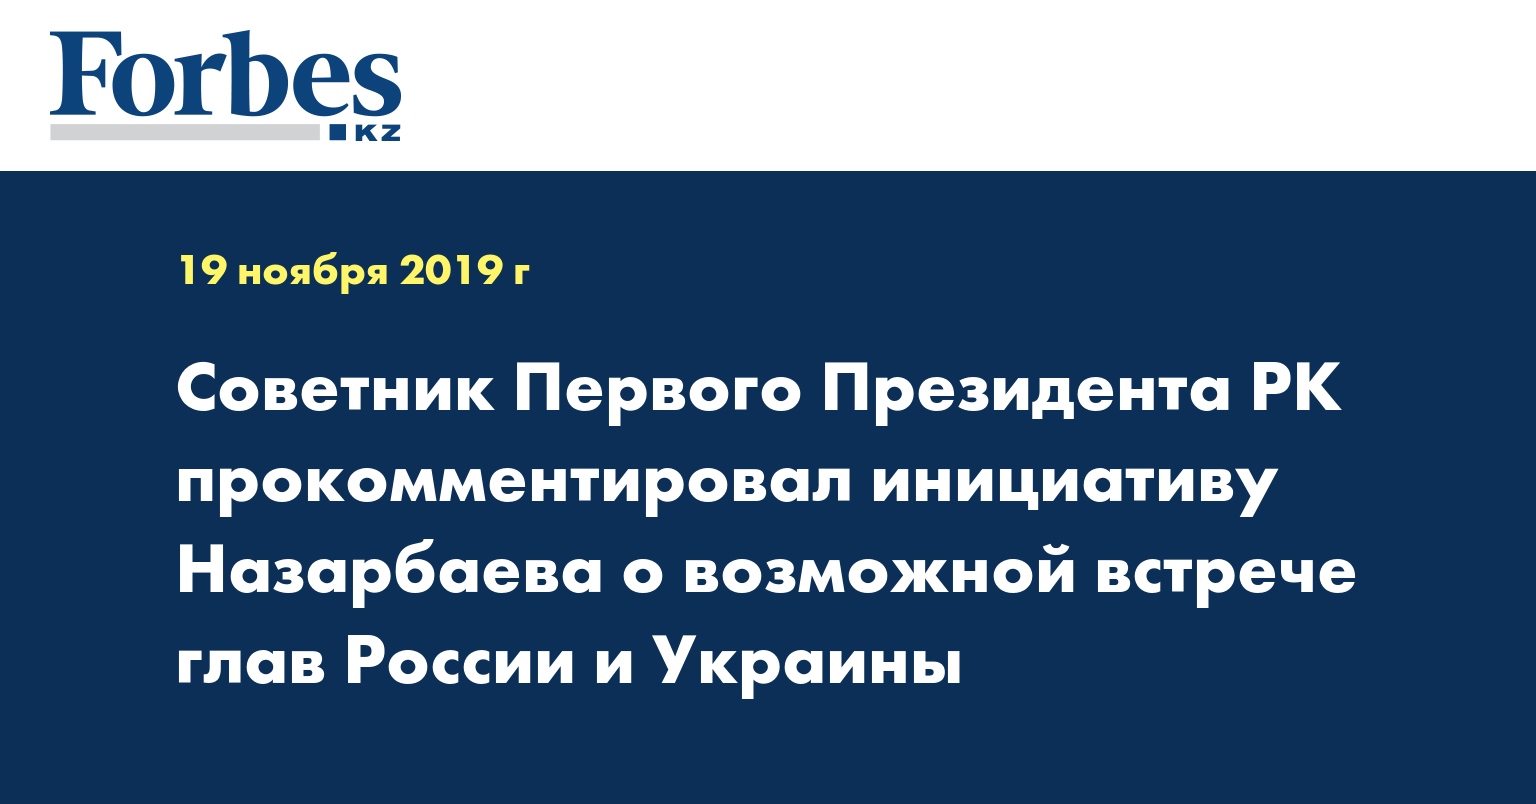 Советник Первого Президента РК прокомментировал инициативу Назарбаева о возможной встрече глав России и Украины